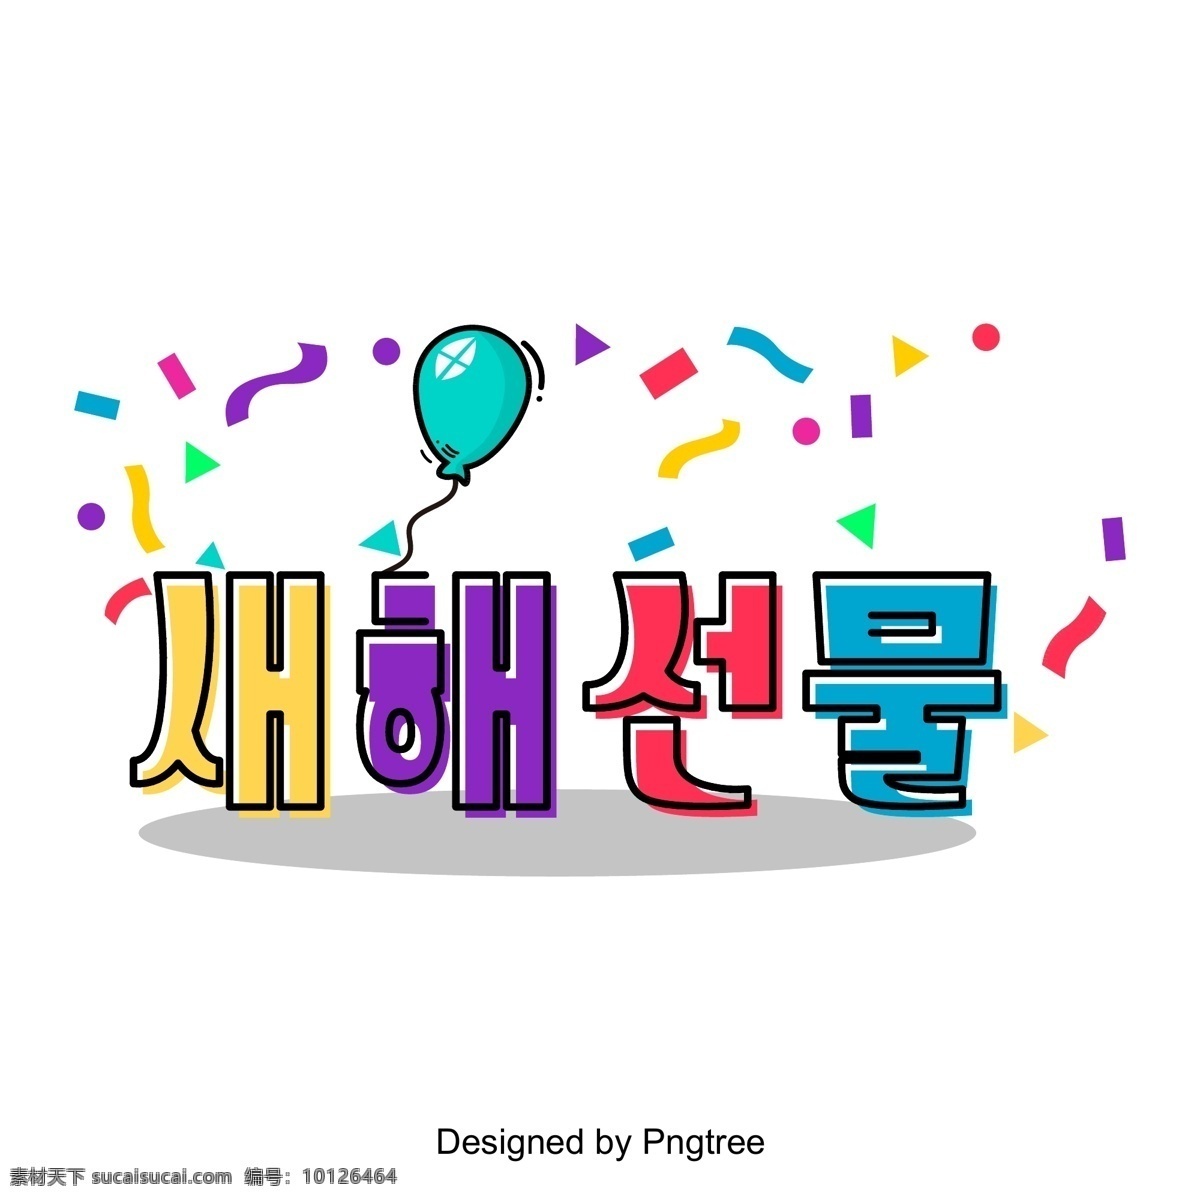 庆祝 彩色 油漆 颜色 后 韩国 场景 新年 礼品 节 彩色绘画 带 气球 七色 韩文 现场 字体的活动 可爱 向量 几何 华美